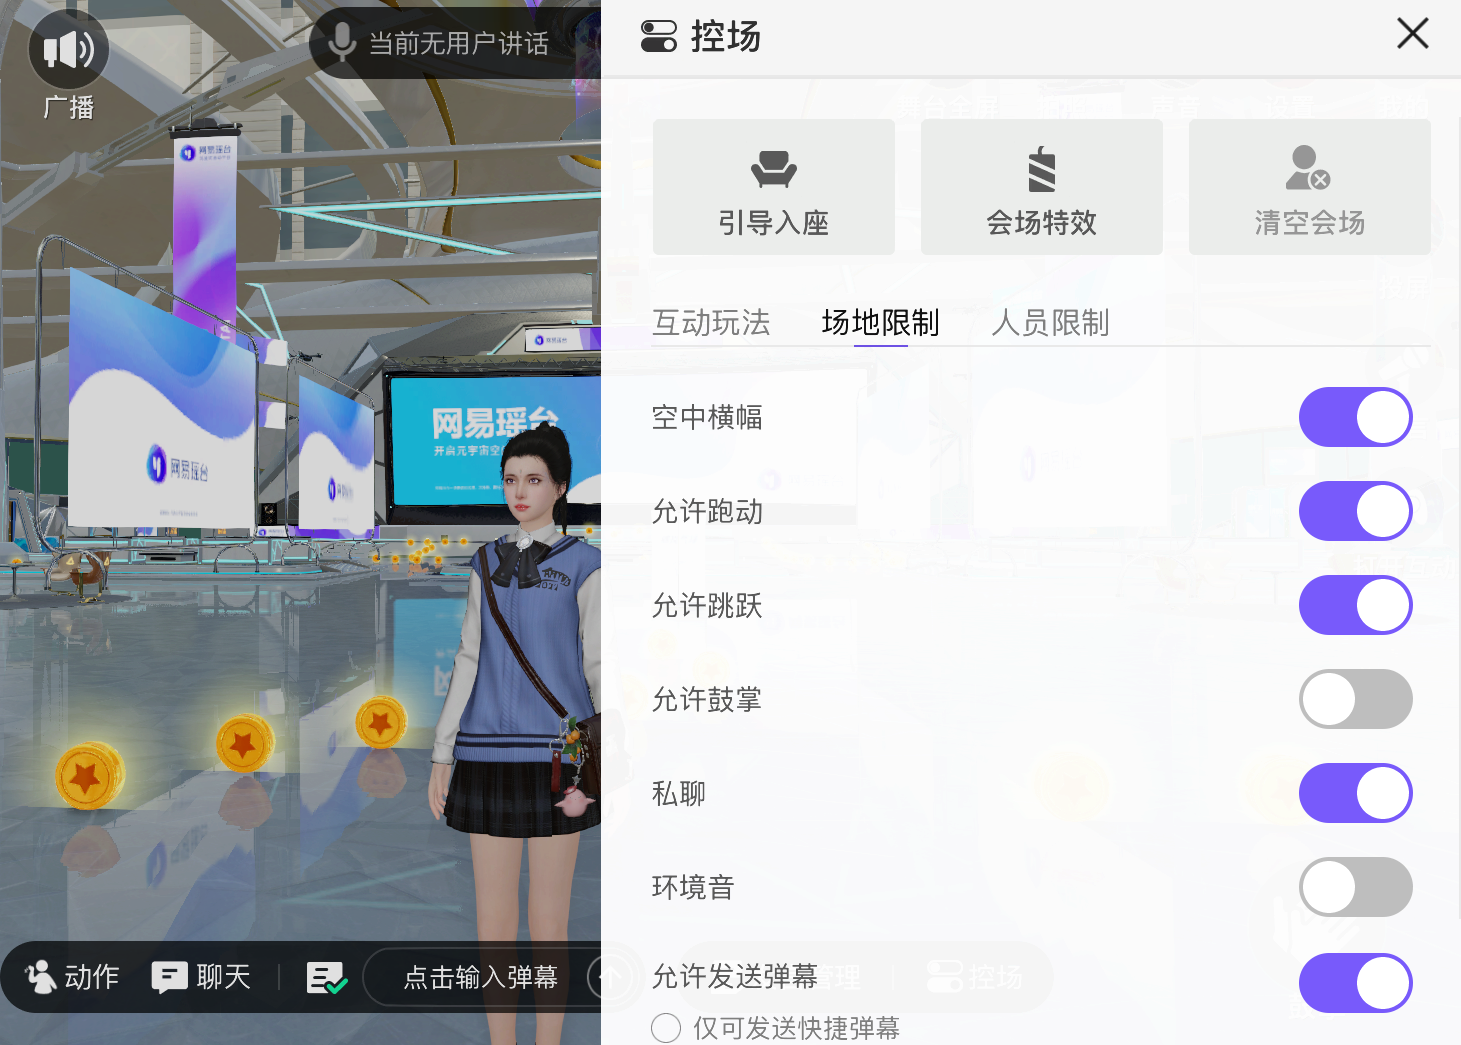 图片展示了一个模拟的虚拟现实界面，中间有一个穿校服的女性动漫角色，周围环绕着虚拟图标和设置选项。